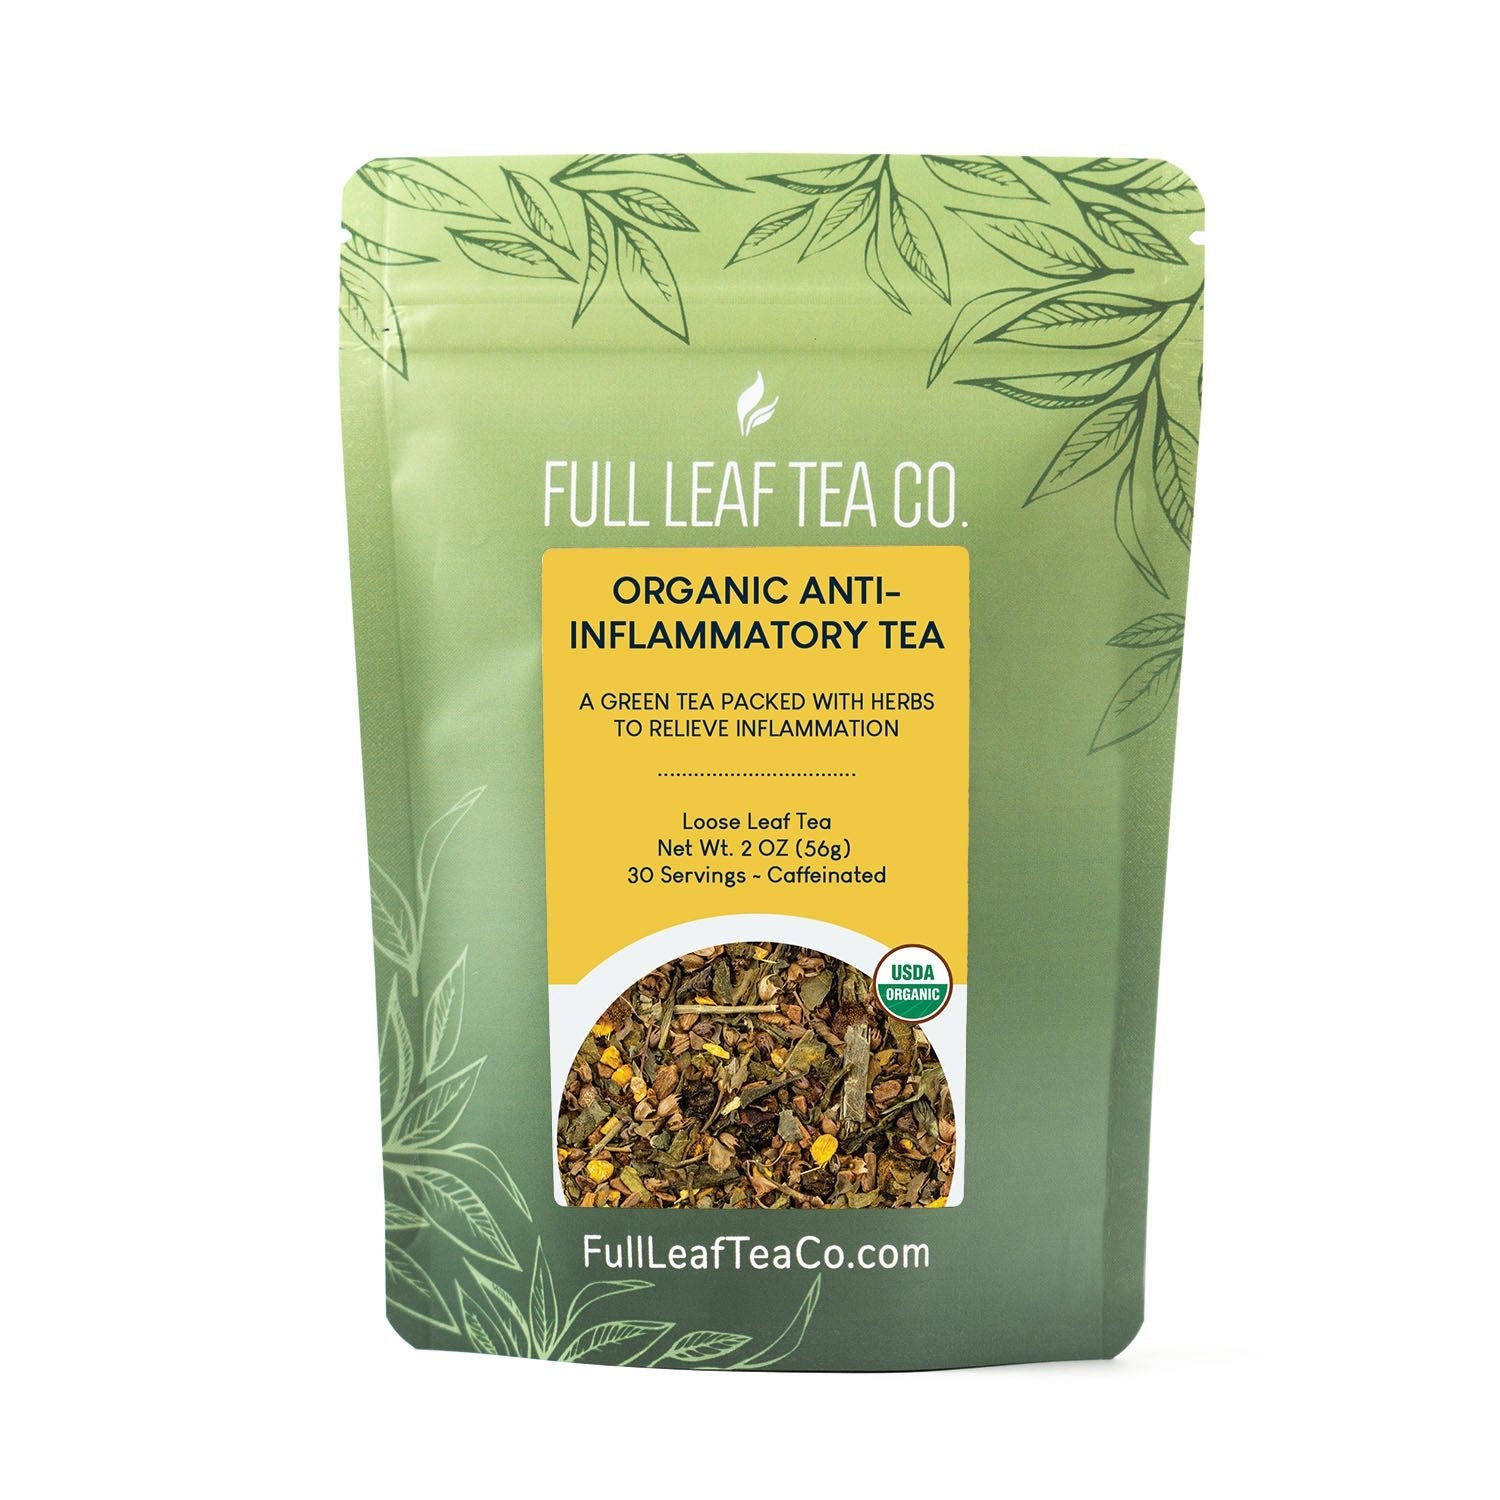 Organic Anti-Inflammatory Tea - Loose Leaf Tea - Full Leaf Tea Company